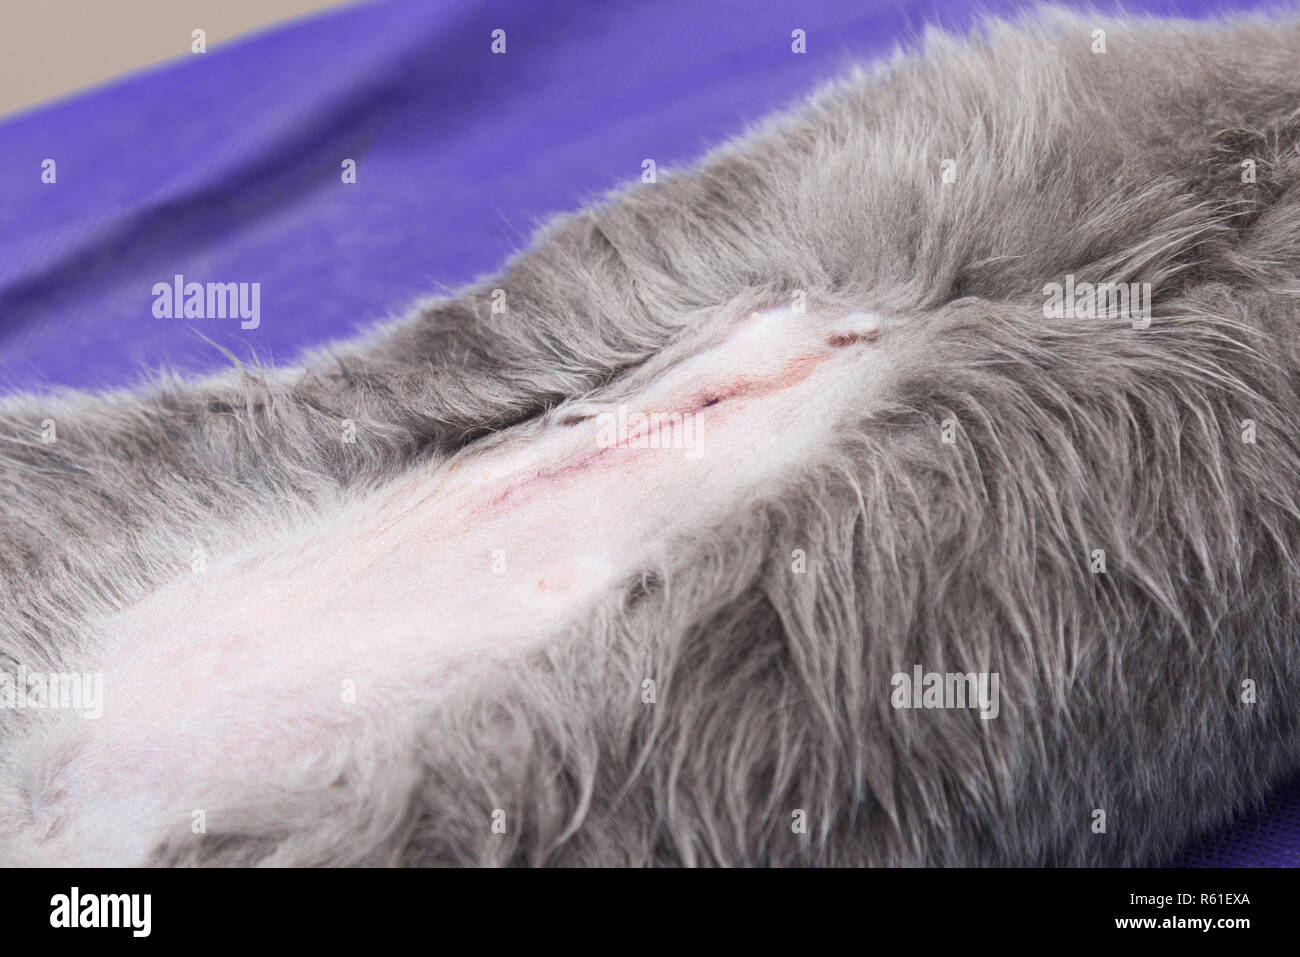 La stérilisation d'un chat dans une clinique vétérinaire, un chat sur une  table d'opération Photo Stock - Alamy